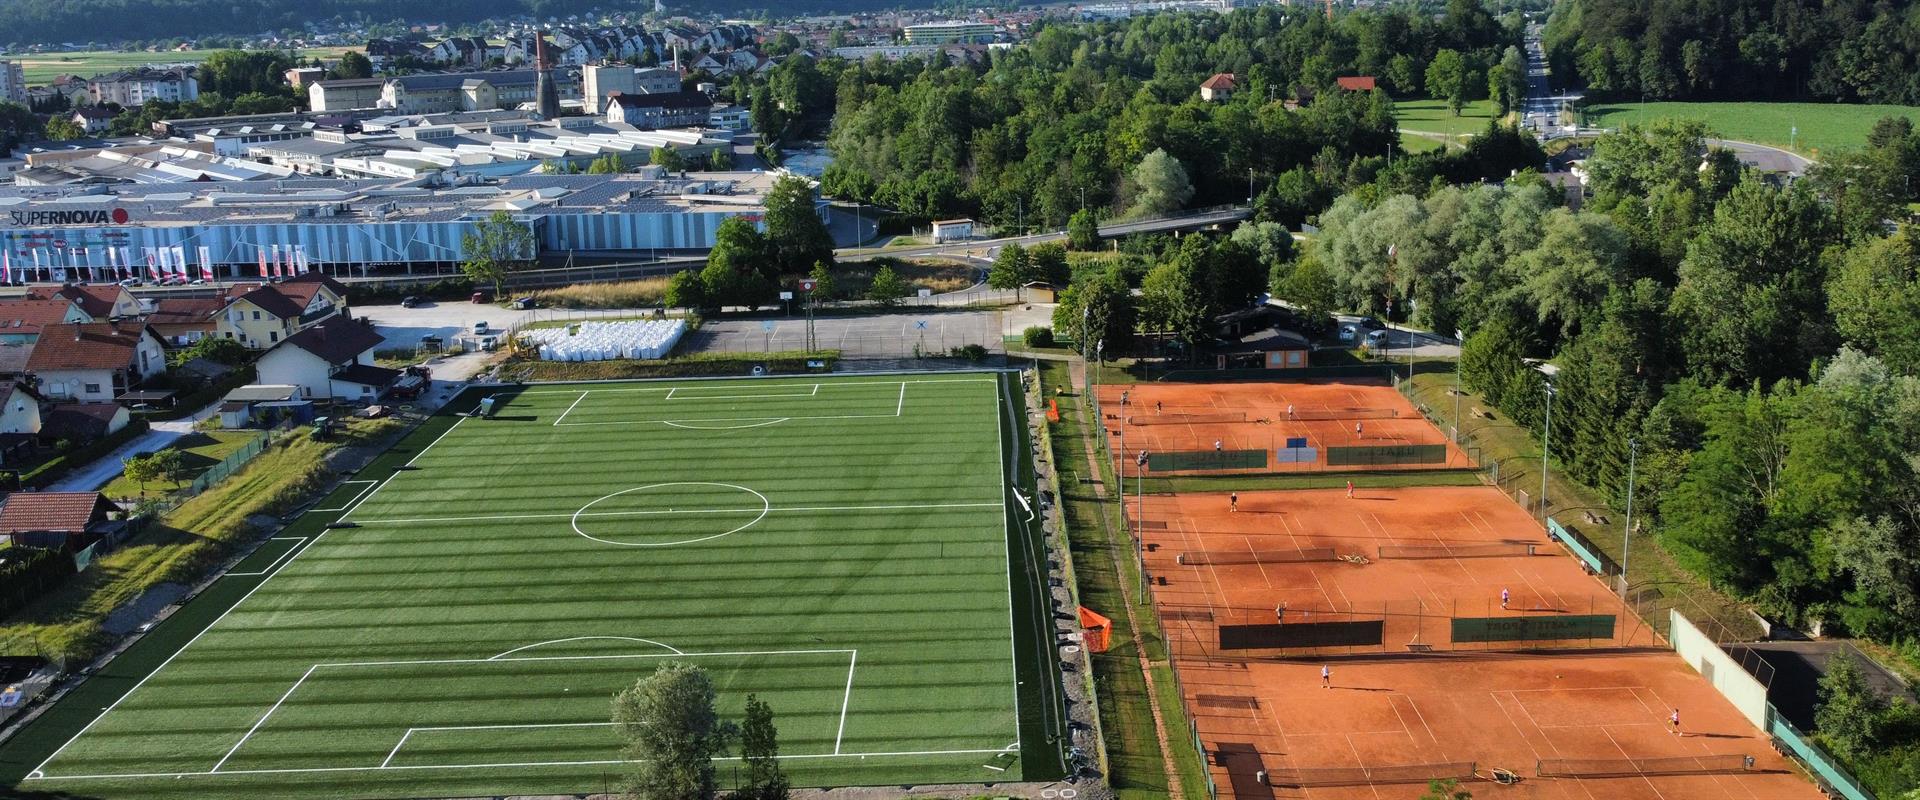 Gradimo nogometno igrišče z umetno travo - Športni park Virtus